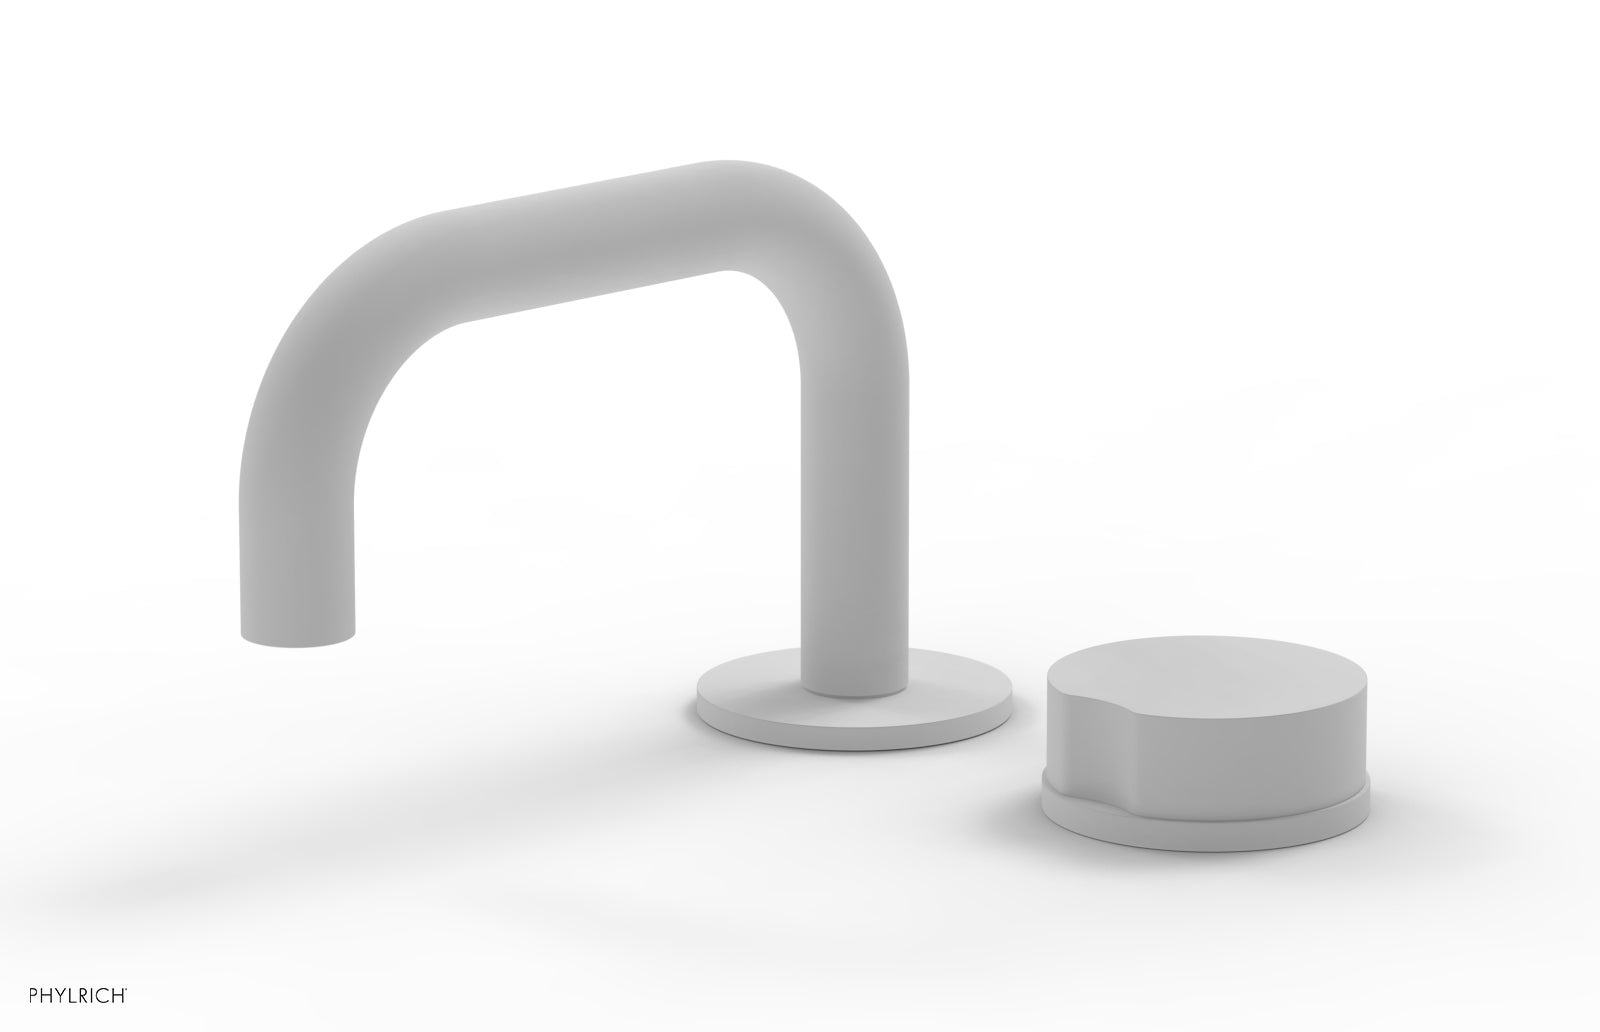 Phylrich CIRC Single Handle Faucet - Low Spout